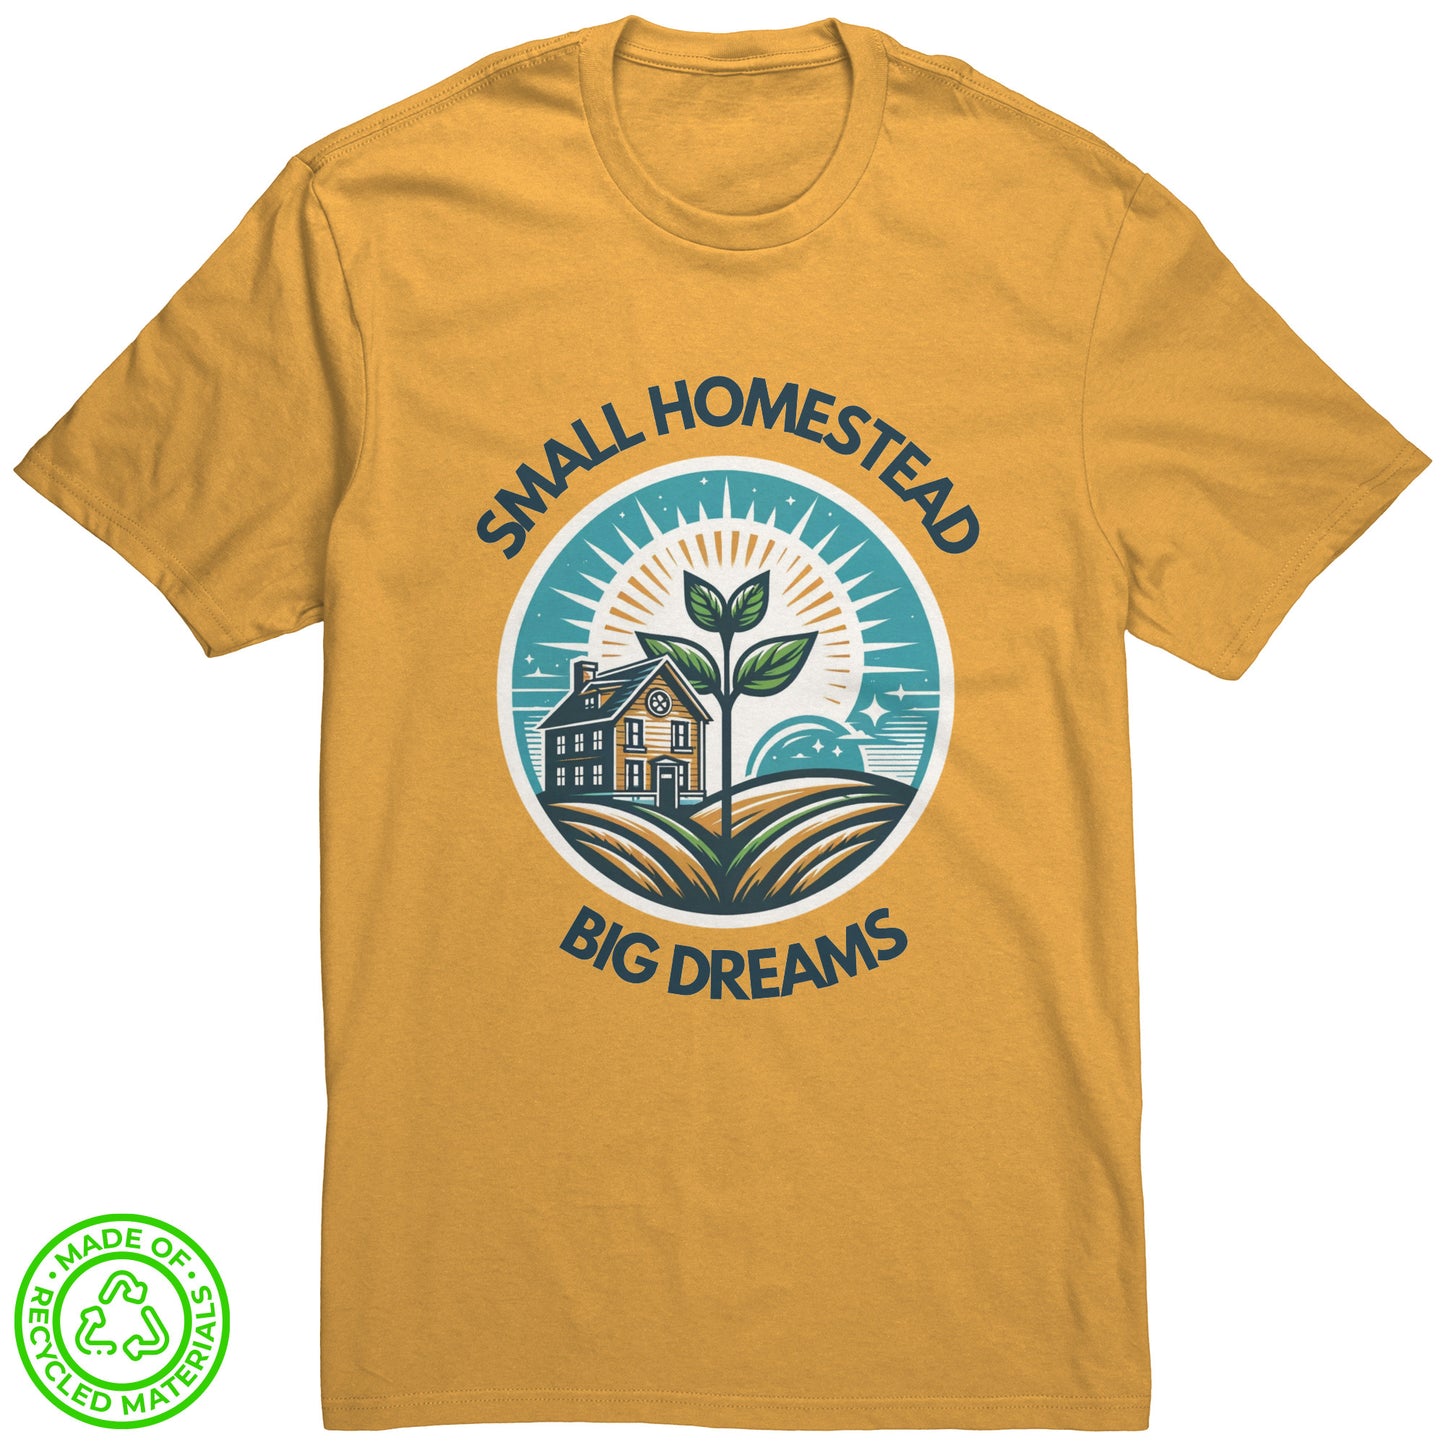 Small Homestead, Big Dreams Shirt by Farmer Brad